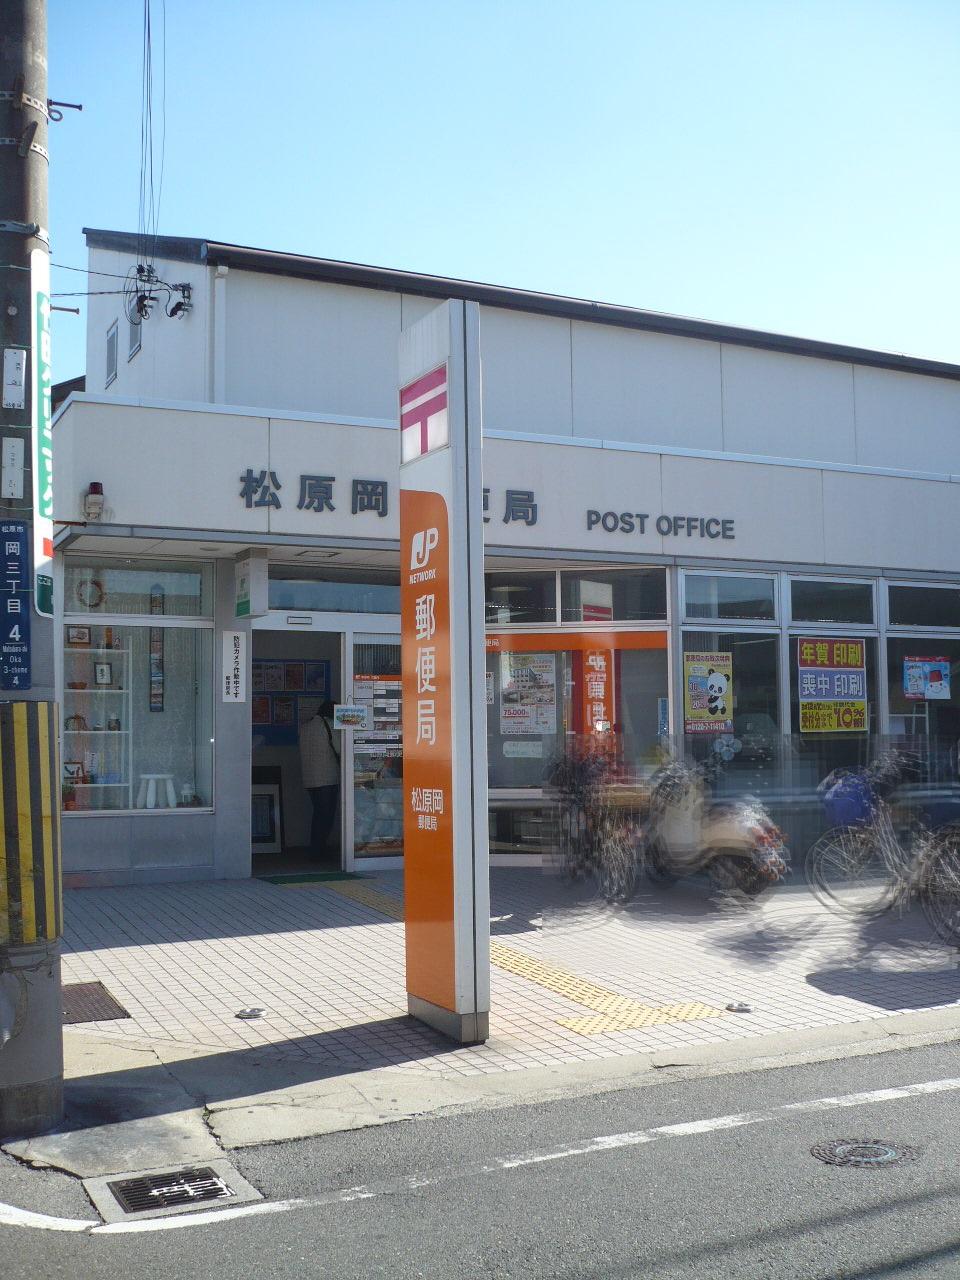 post office. 153m to Matsubara Oka post office